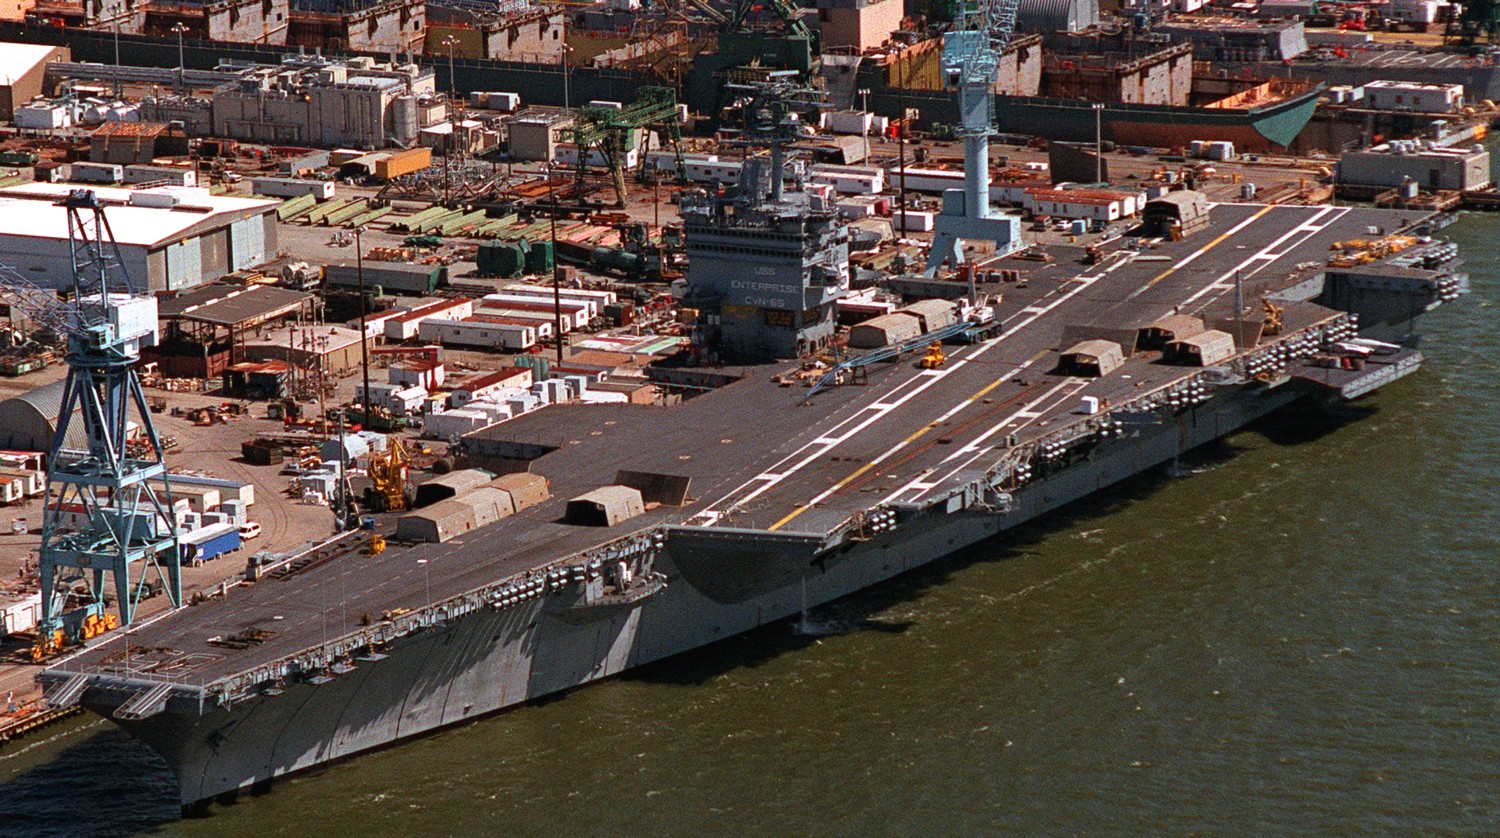 cvn-65 uss enterprise aircraft carrier us navy newport news shipbuilding virginia 88